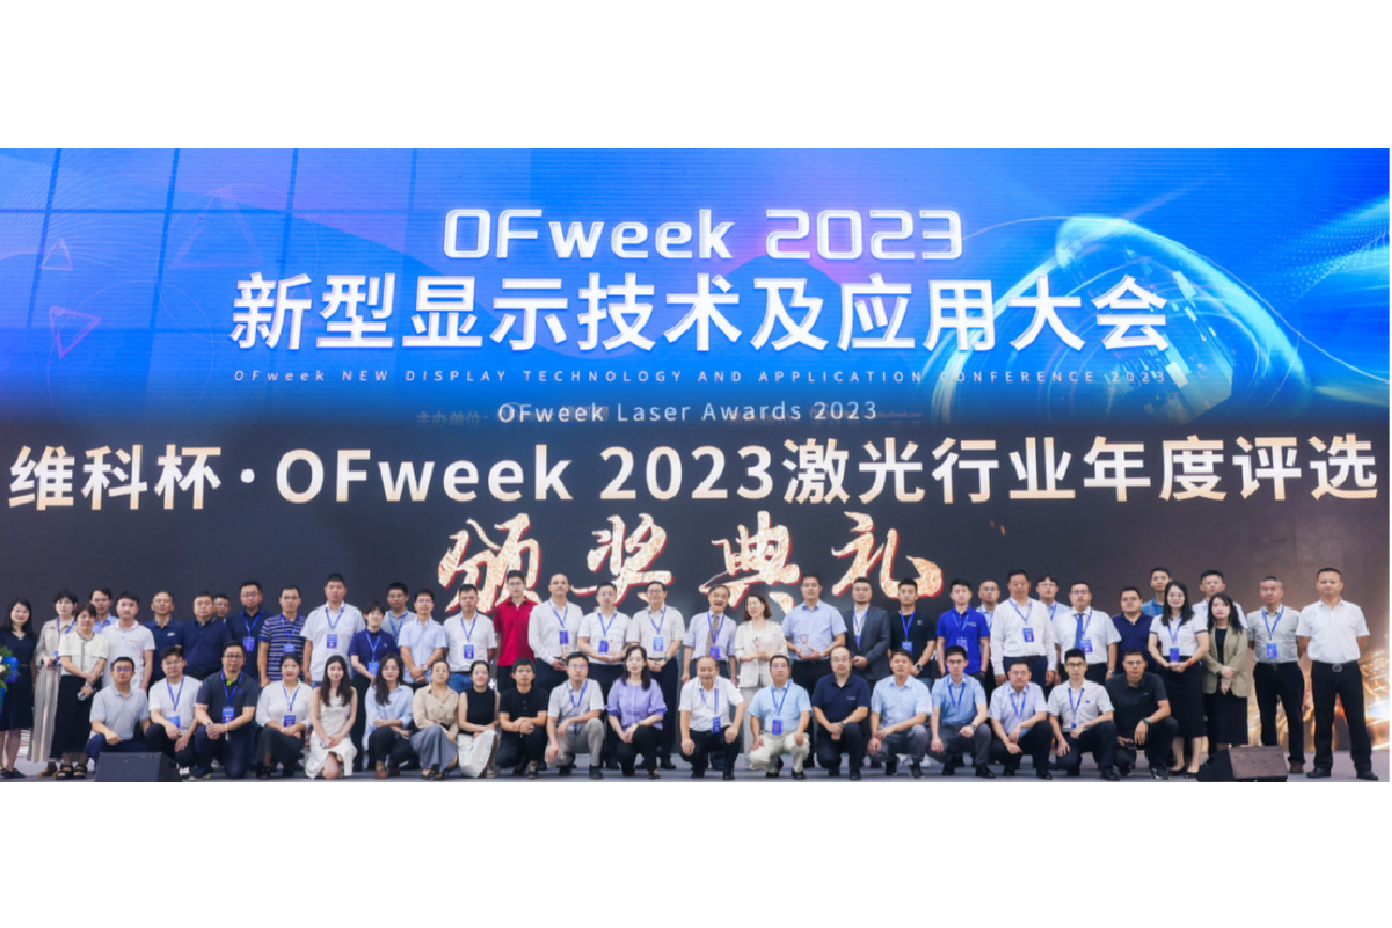 米博·体育(中国)科技有限公司斩获维科杯·OFweek2023年度评选两大奖项